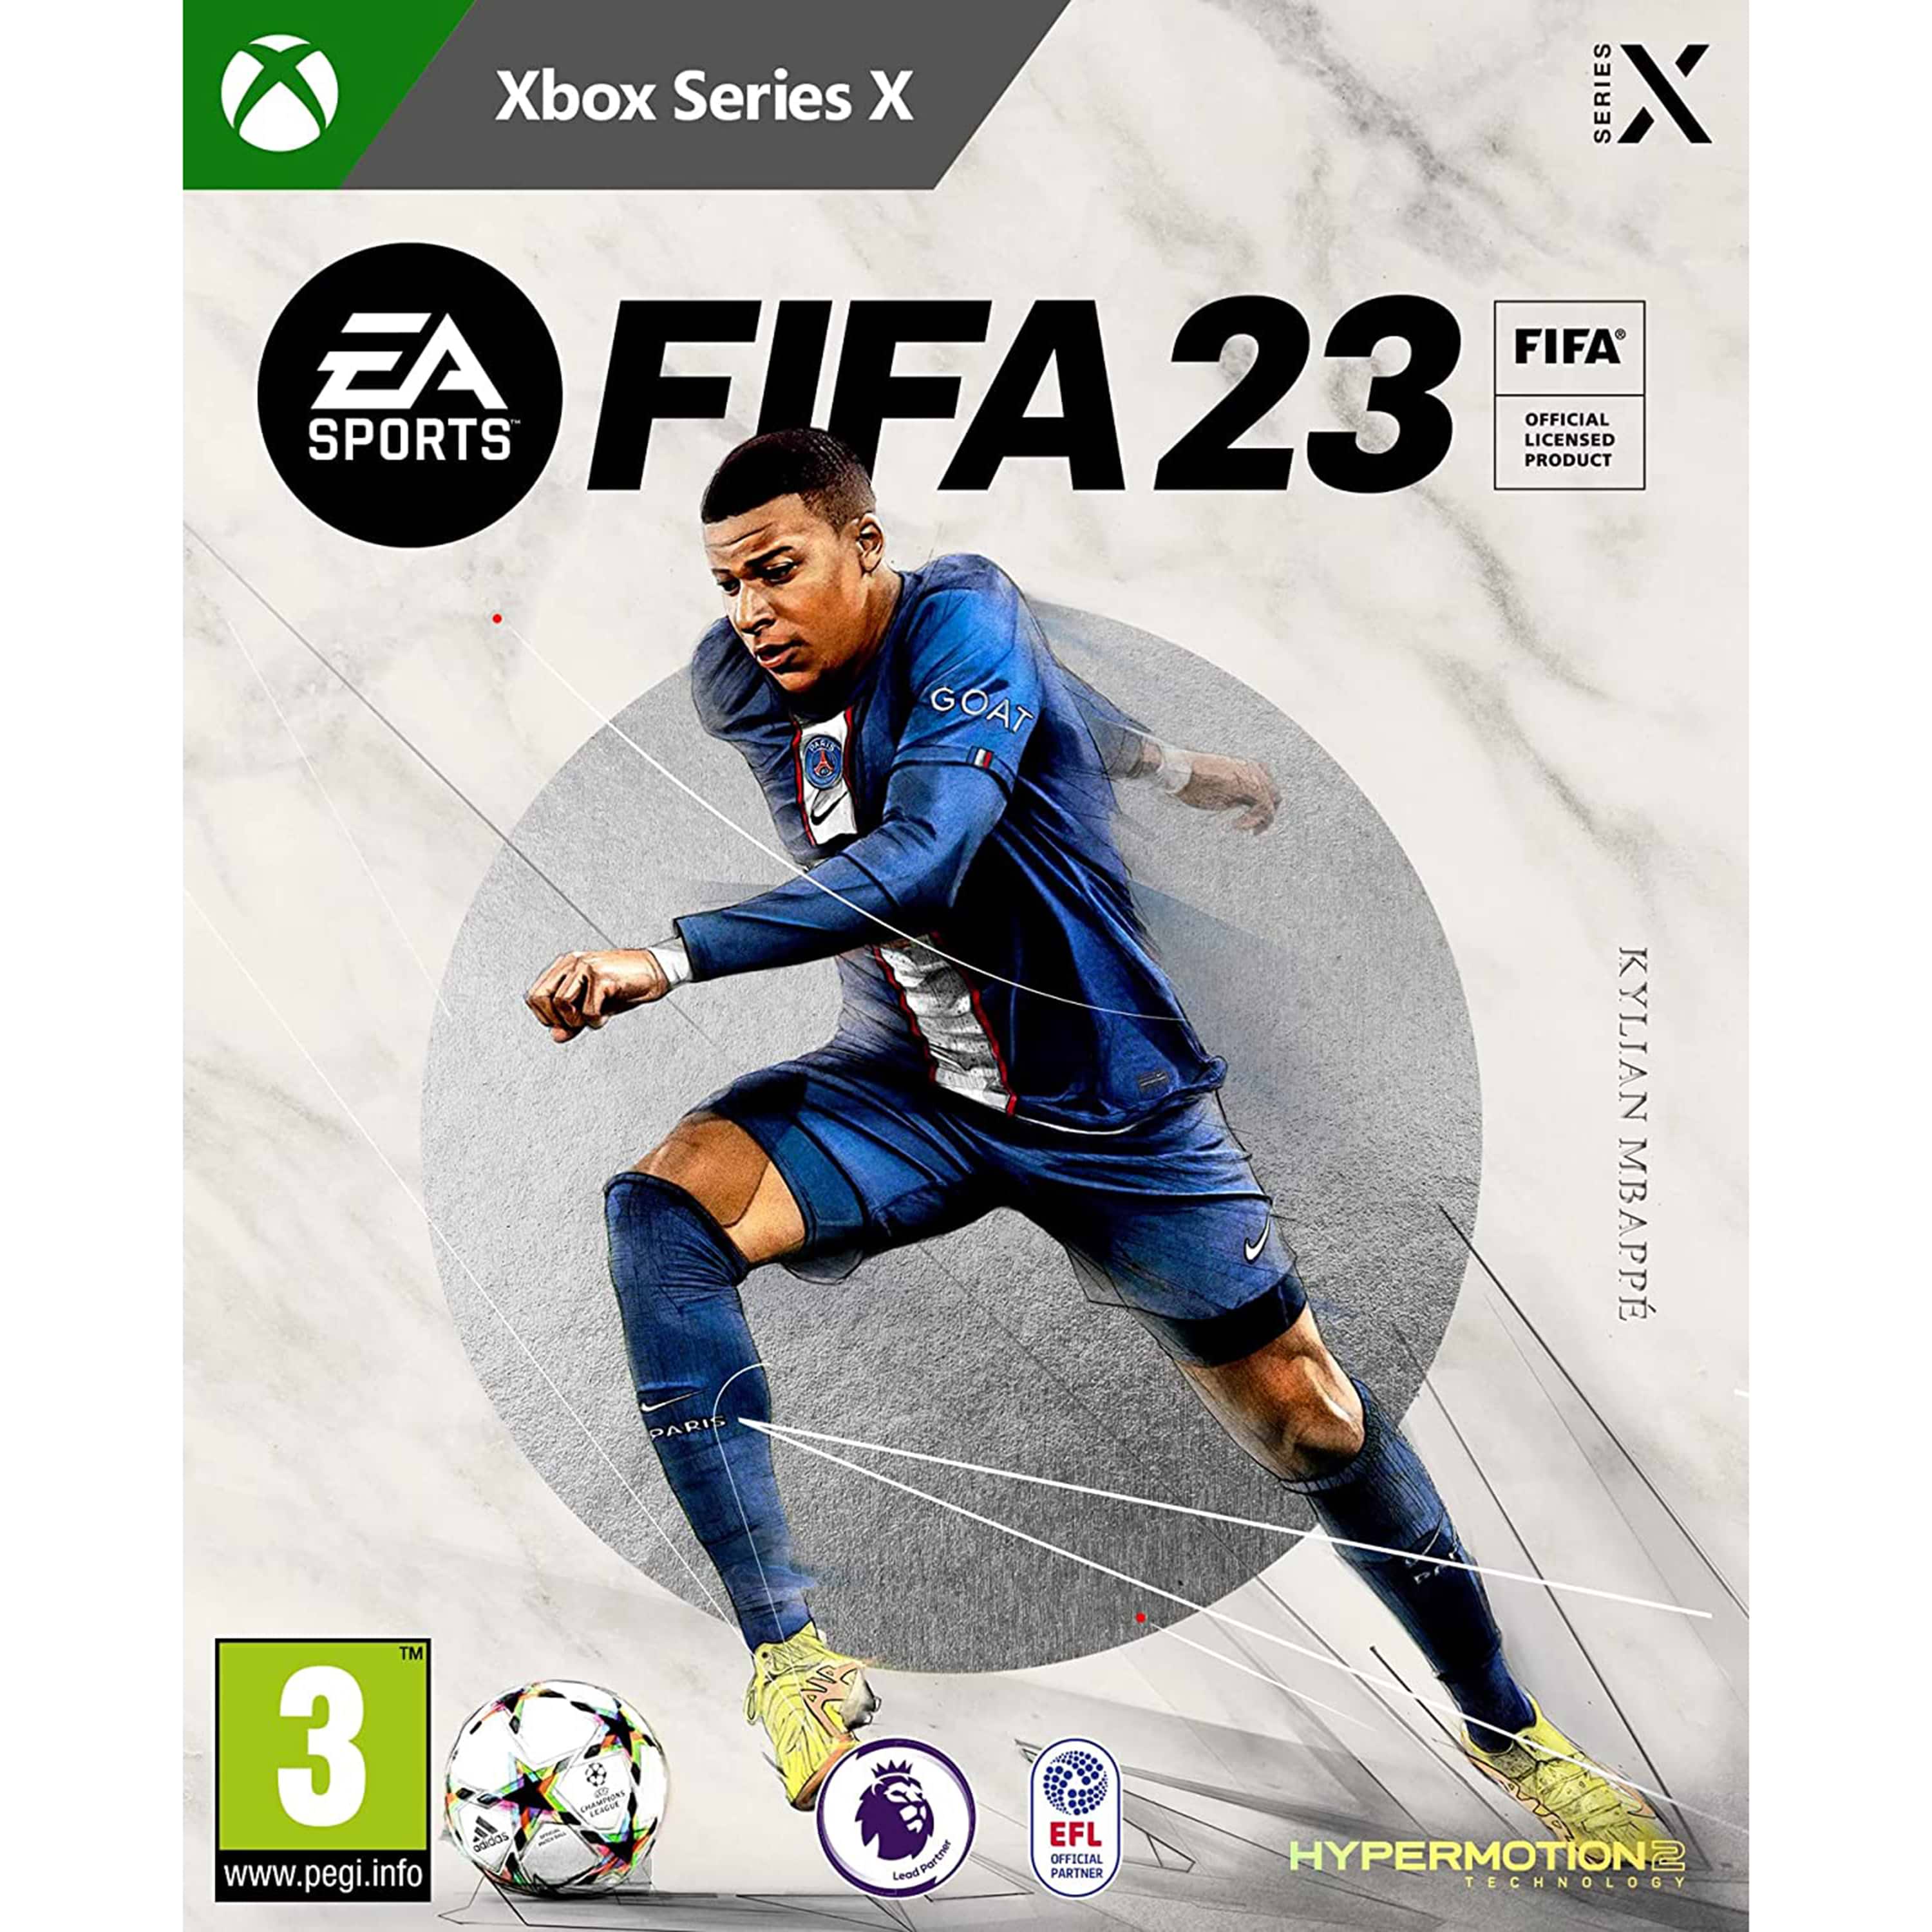 משחק FIFA 23 English/Arabic לקונסולת XBOX Series S|X